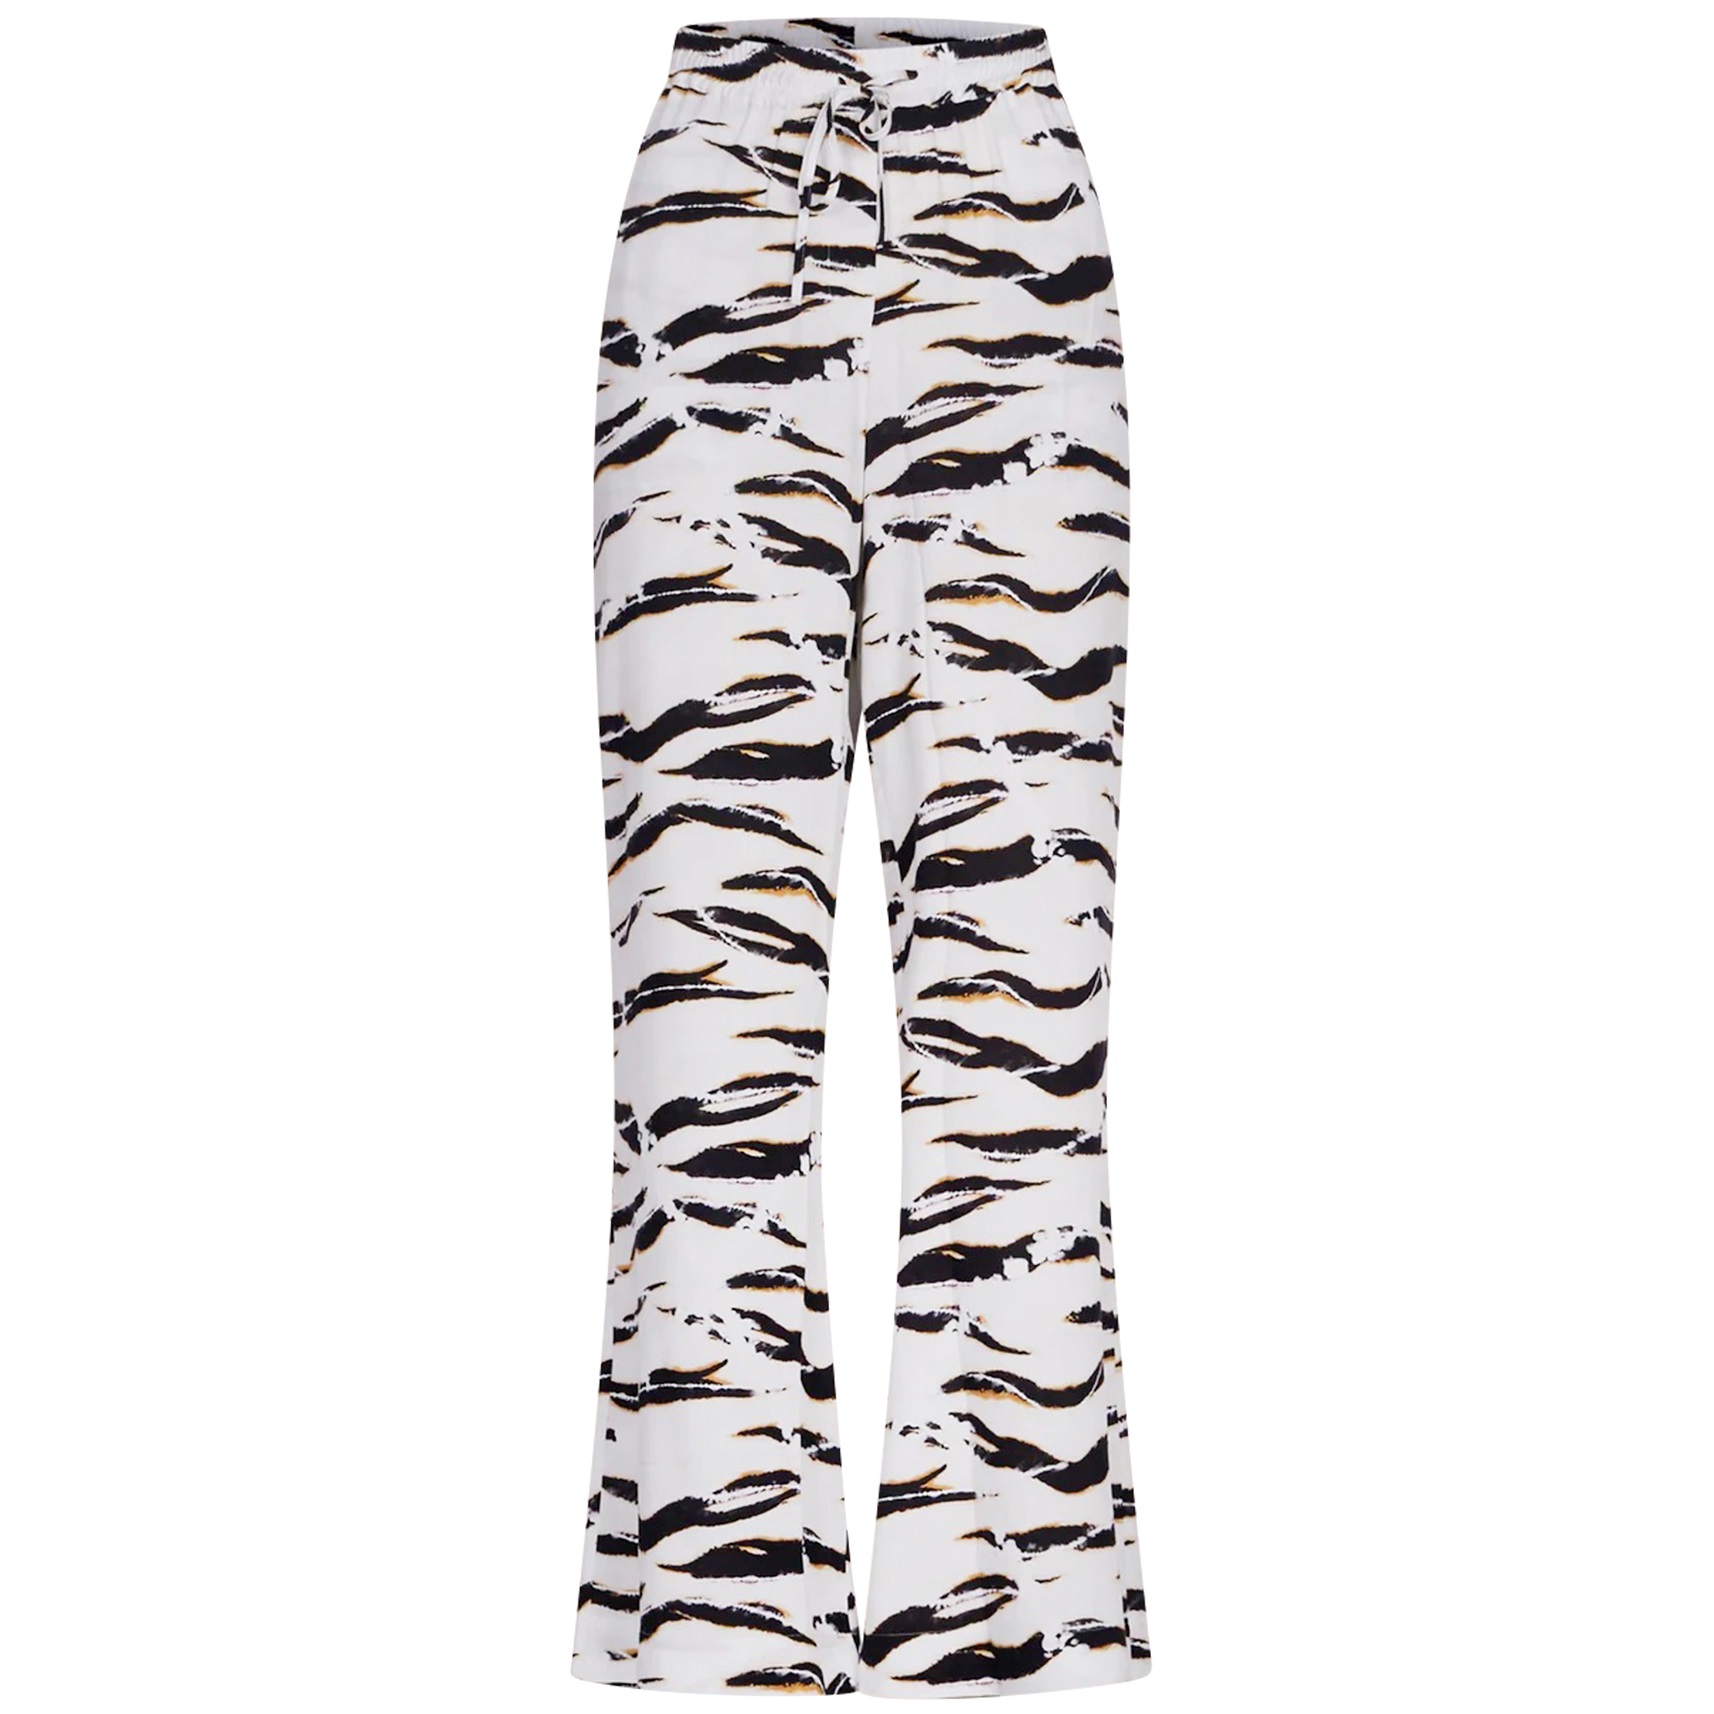 LALA BERLIN Pants Palooza in Zebra Wave XS